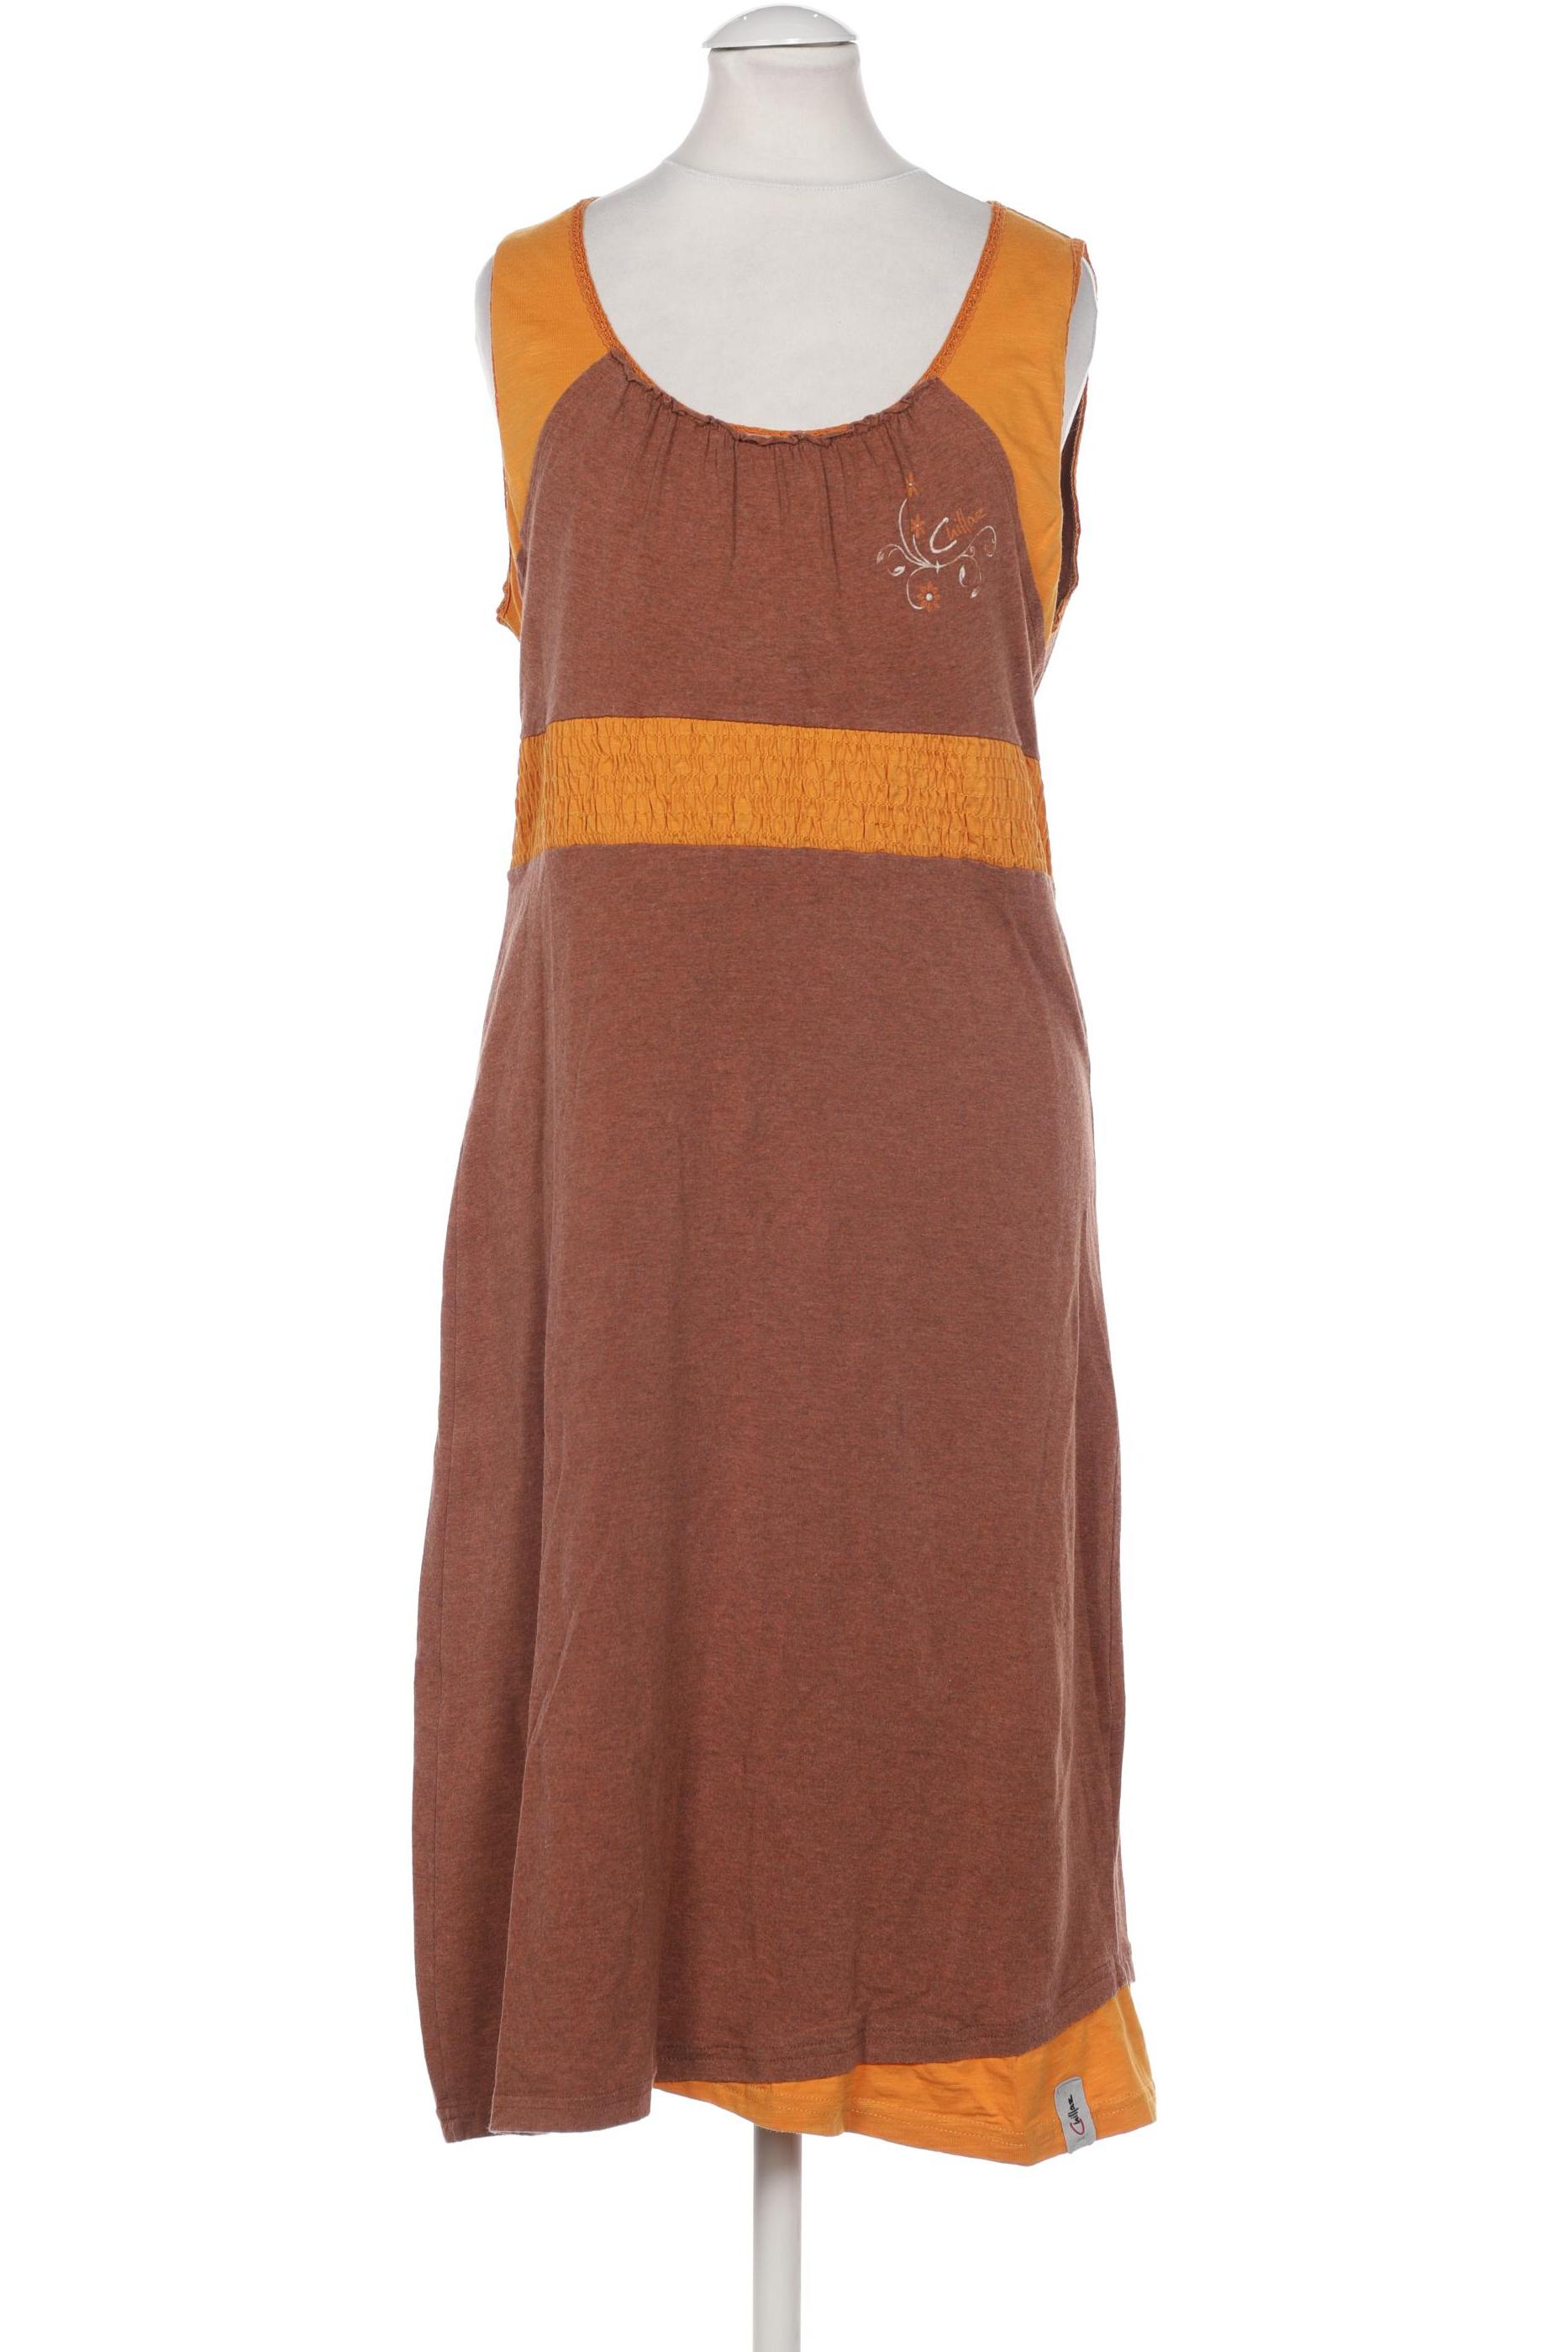 Chillaz Damen Kleid, braun, Gr. 36 von Chillaz